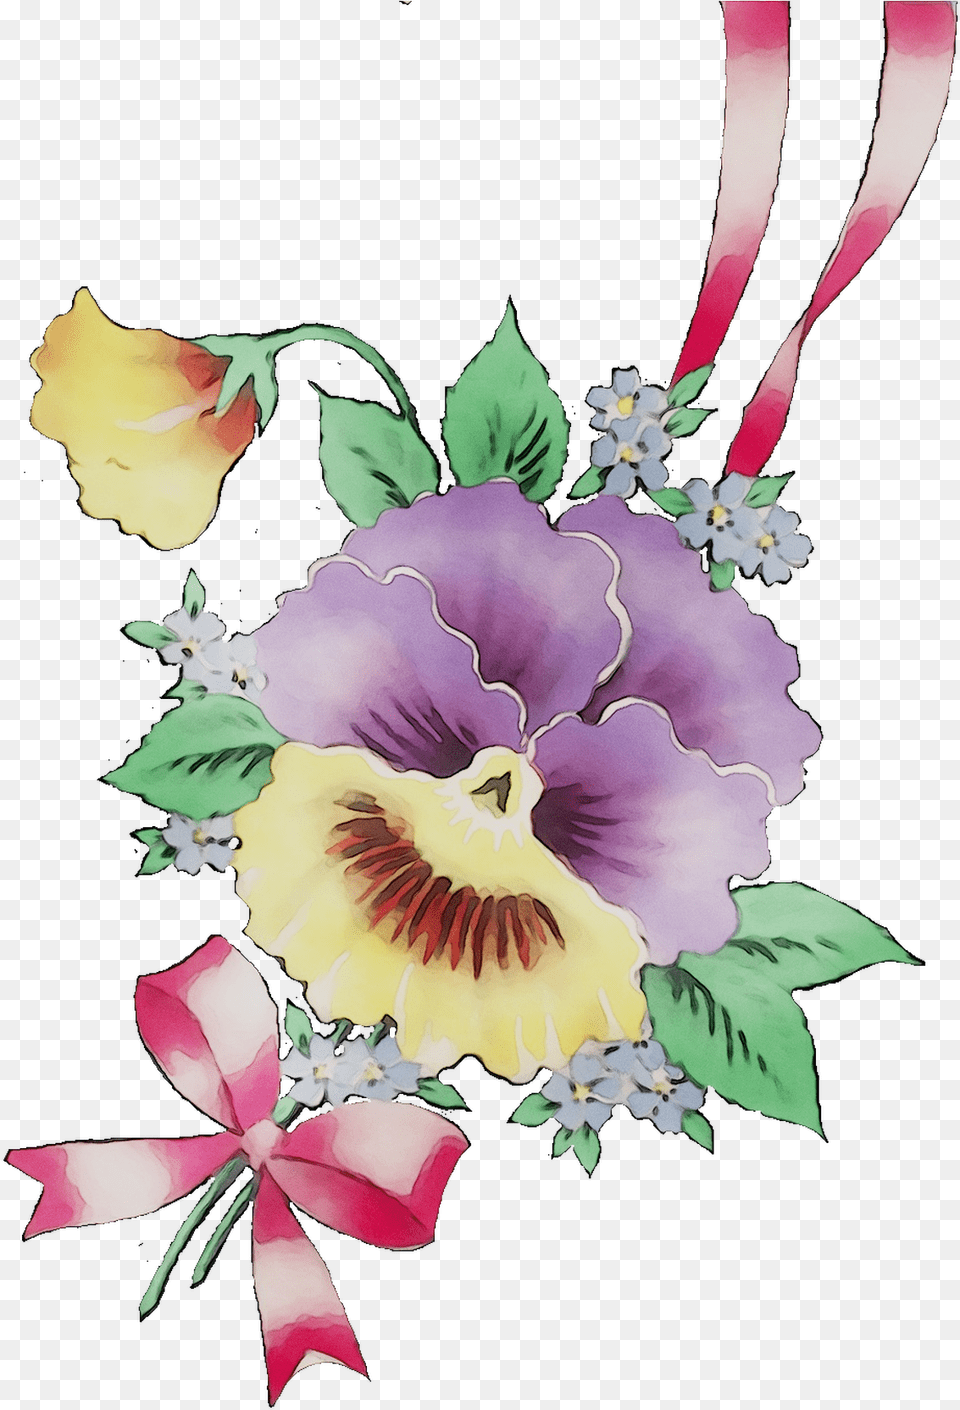 Cut Bouquet Pansy Flower Design Floral Flowers Clipart Watercolor Pastel Flowers, Plant, Petal, Flower Arrangement, Pattern Free Transparent Png